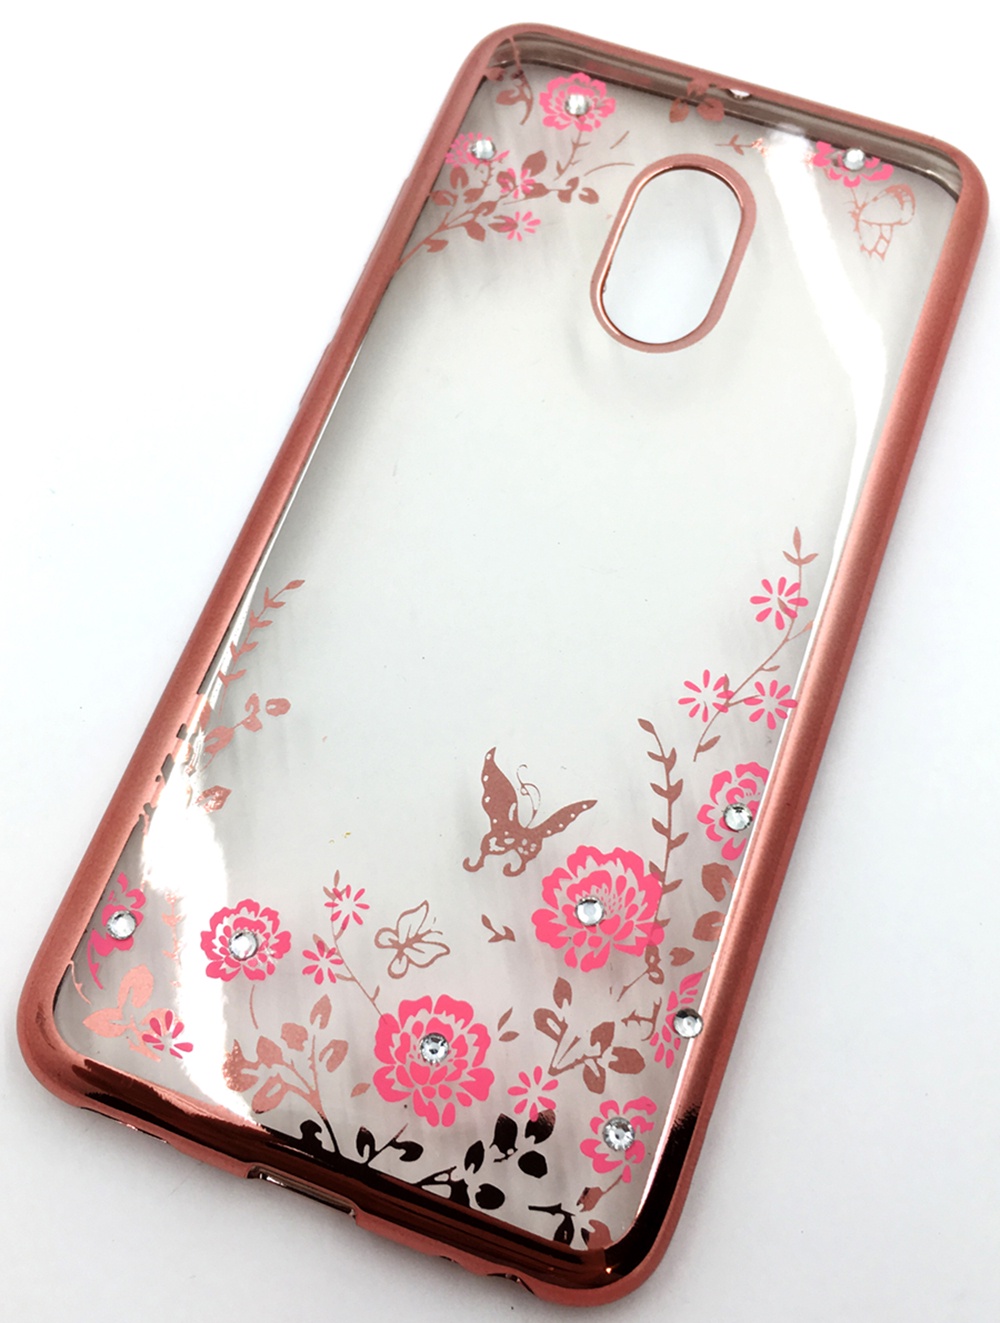 Чехол для сотового телефона Мобильная мода Meizu Pro 6 Силиконовая, прозрачная накладка со стразами, 6371R, розовый